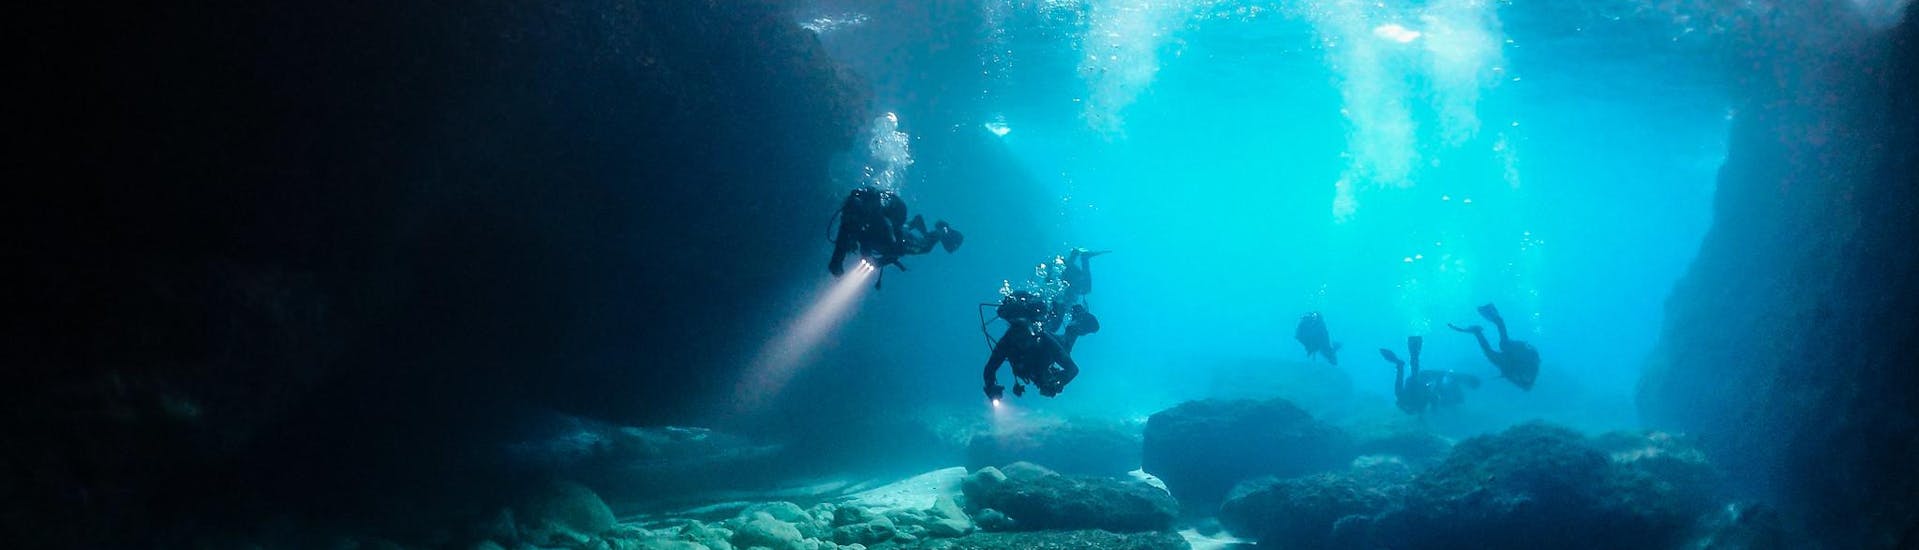 Un gruppo di subacquei certificati durante un'attività in una grotta subacquea.